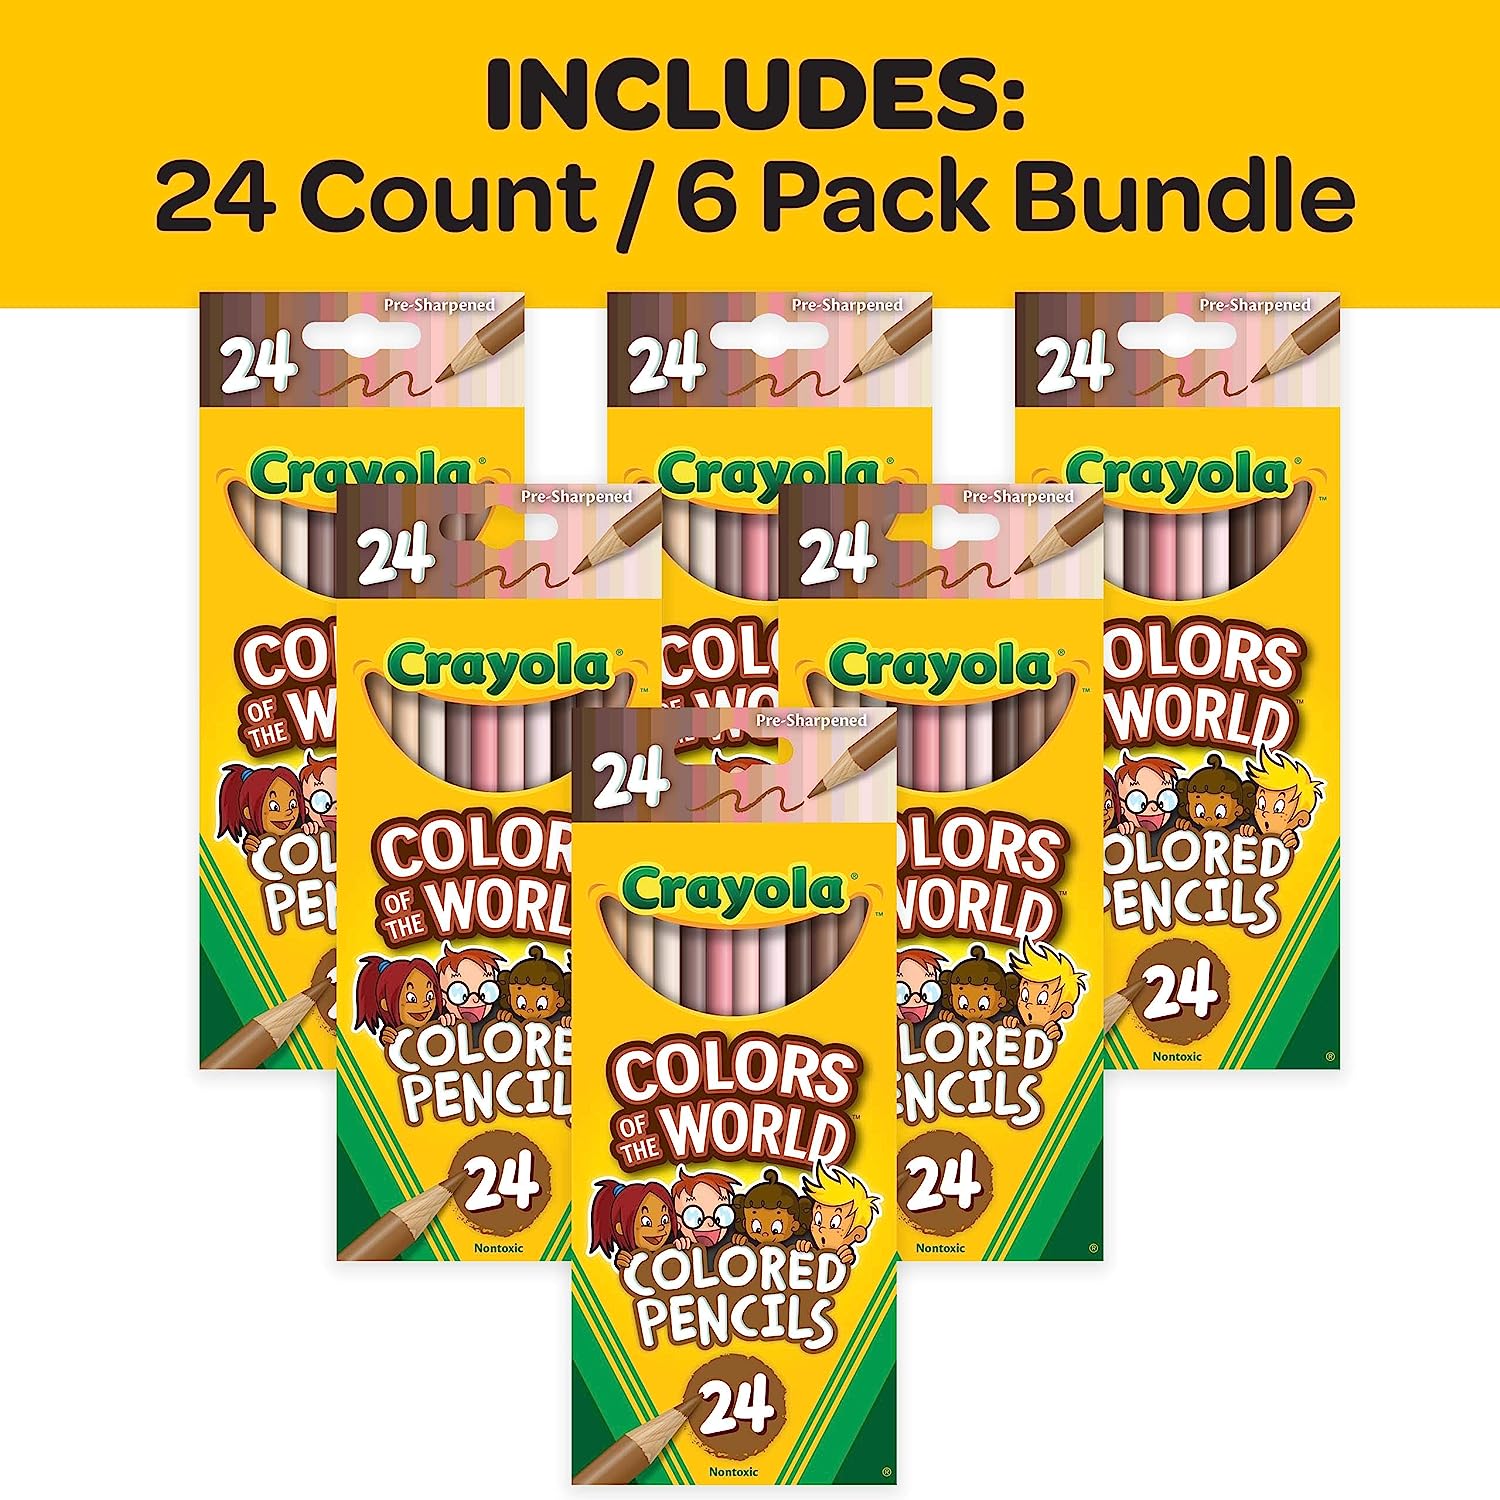 クレヨラ アメリカ 海外輸入 知育玩具 Crayola Colors of the World Bulk Colored Pencil Set - 6 Packs (24ct), Skin Tone Kids Colored Pencils for Kids, School Suppliesクレヨラ アメリカ 海外輸入 知育玩具 3